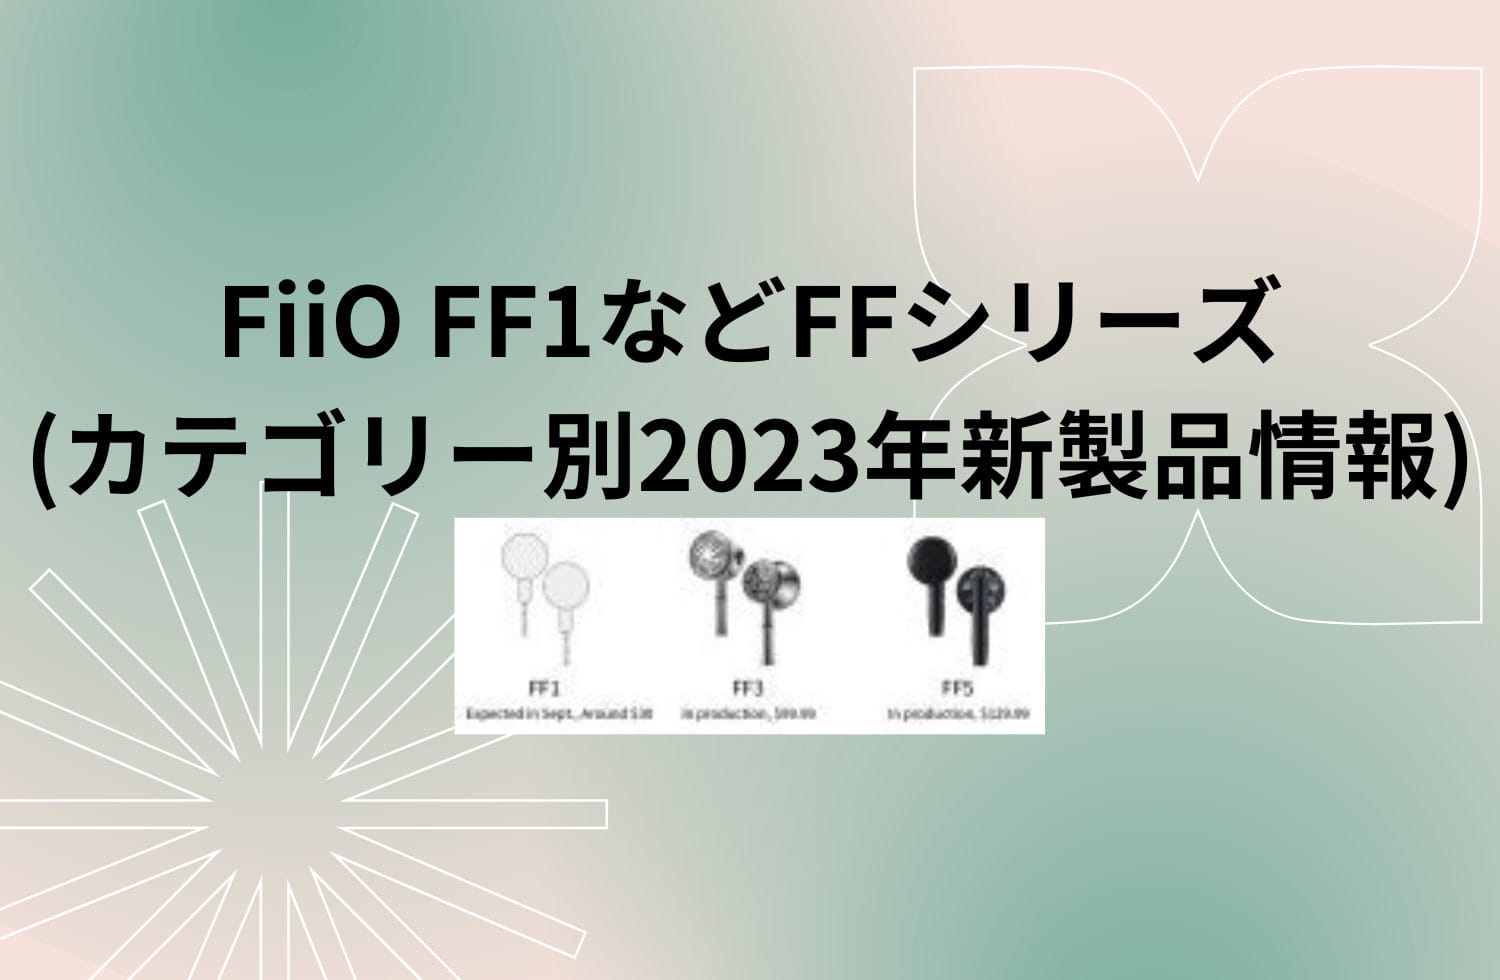 Fiio Ff1などffシリーズ (カテゴリー別2023年新製品情報)